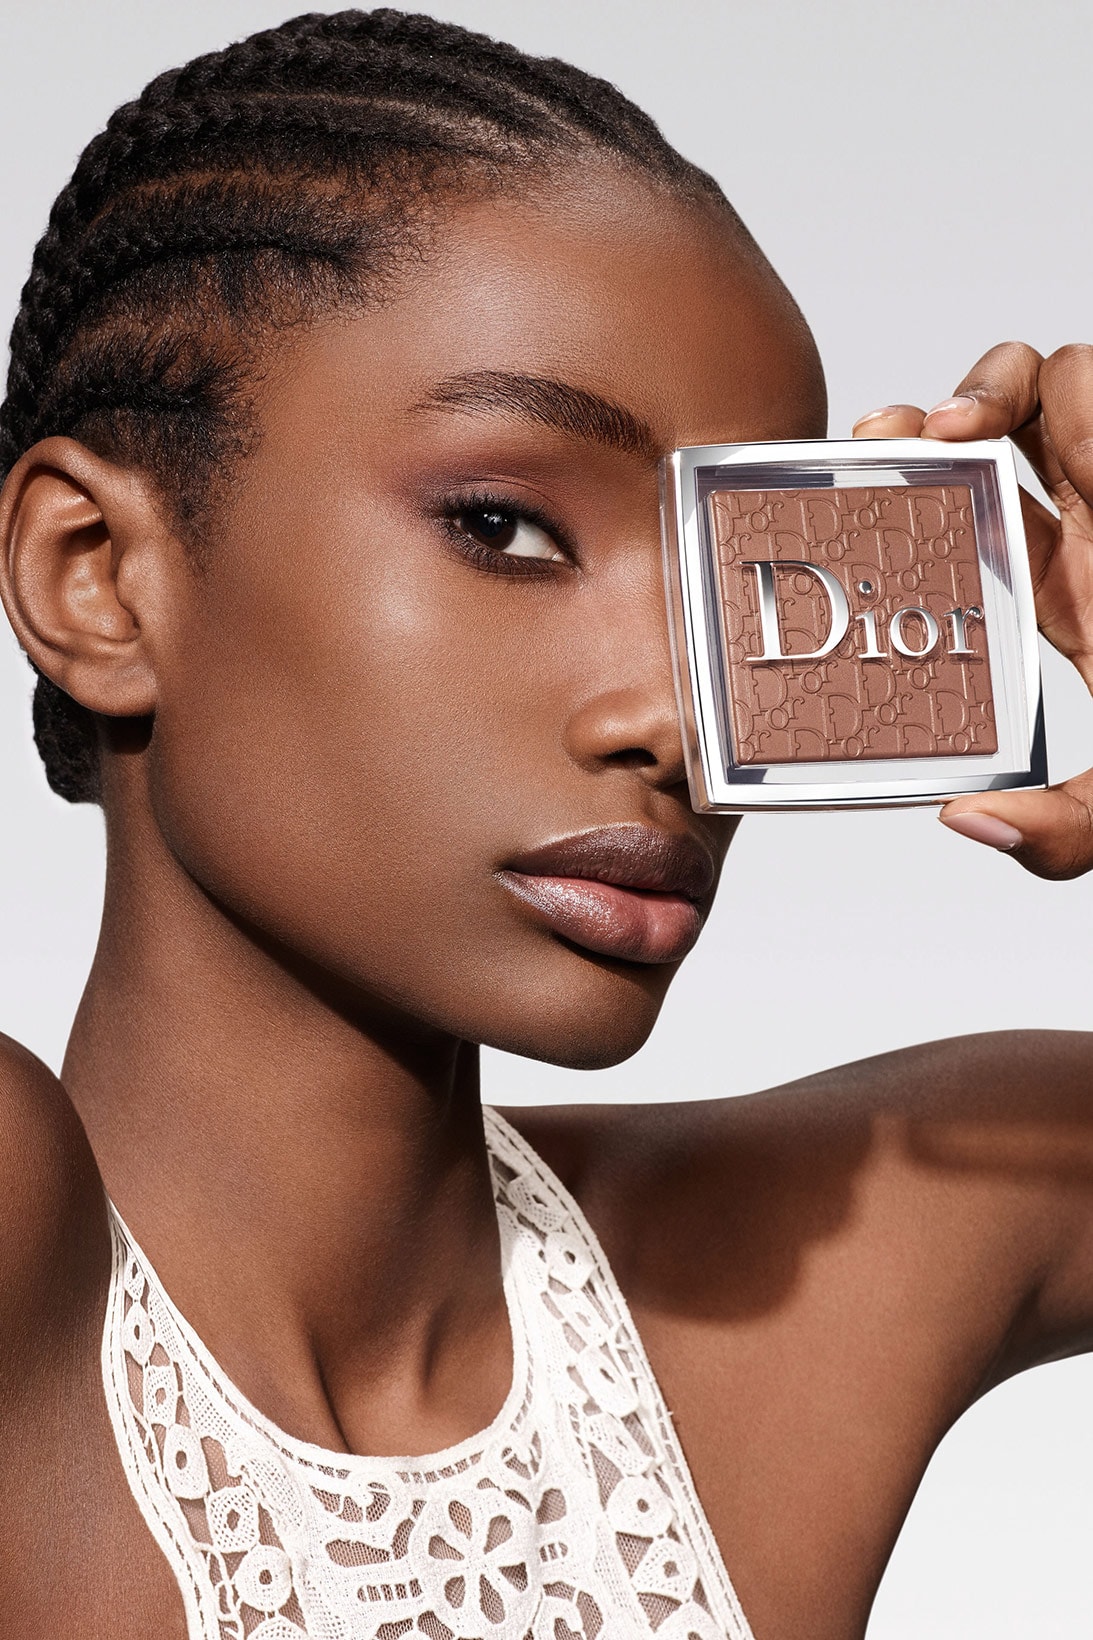 dior beauty face and body powder foundation makeup peter philips imari karanja